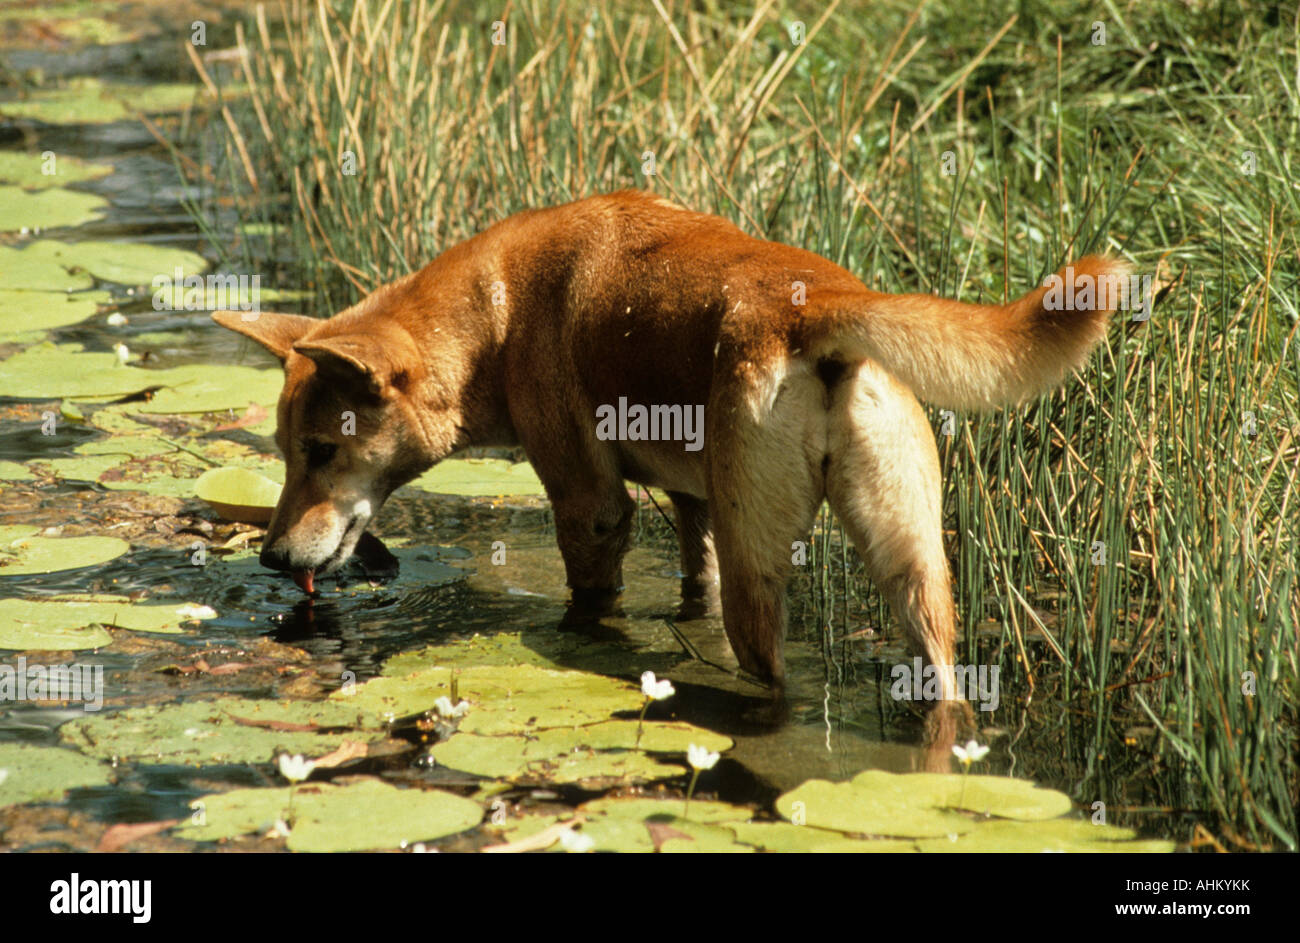 Dingo australischer Wildhund trinkt Wasser Canis dingo drinks water Stock Photo - Alamy